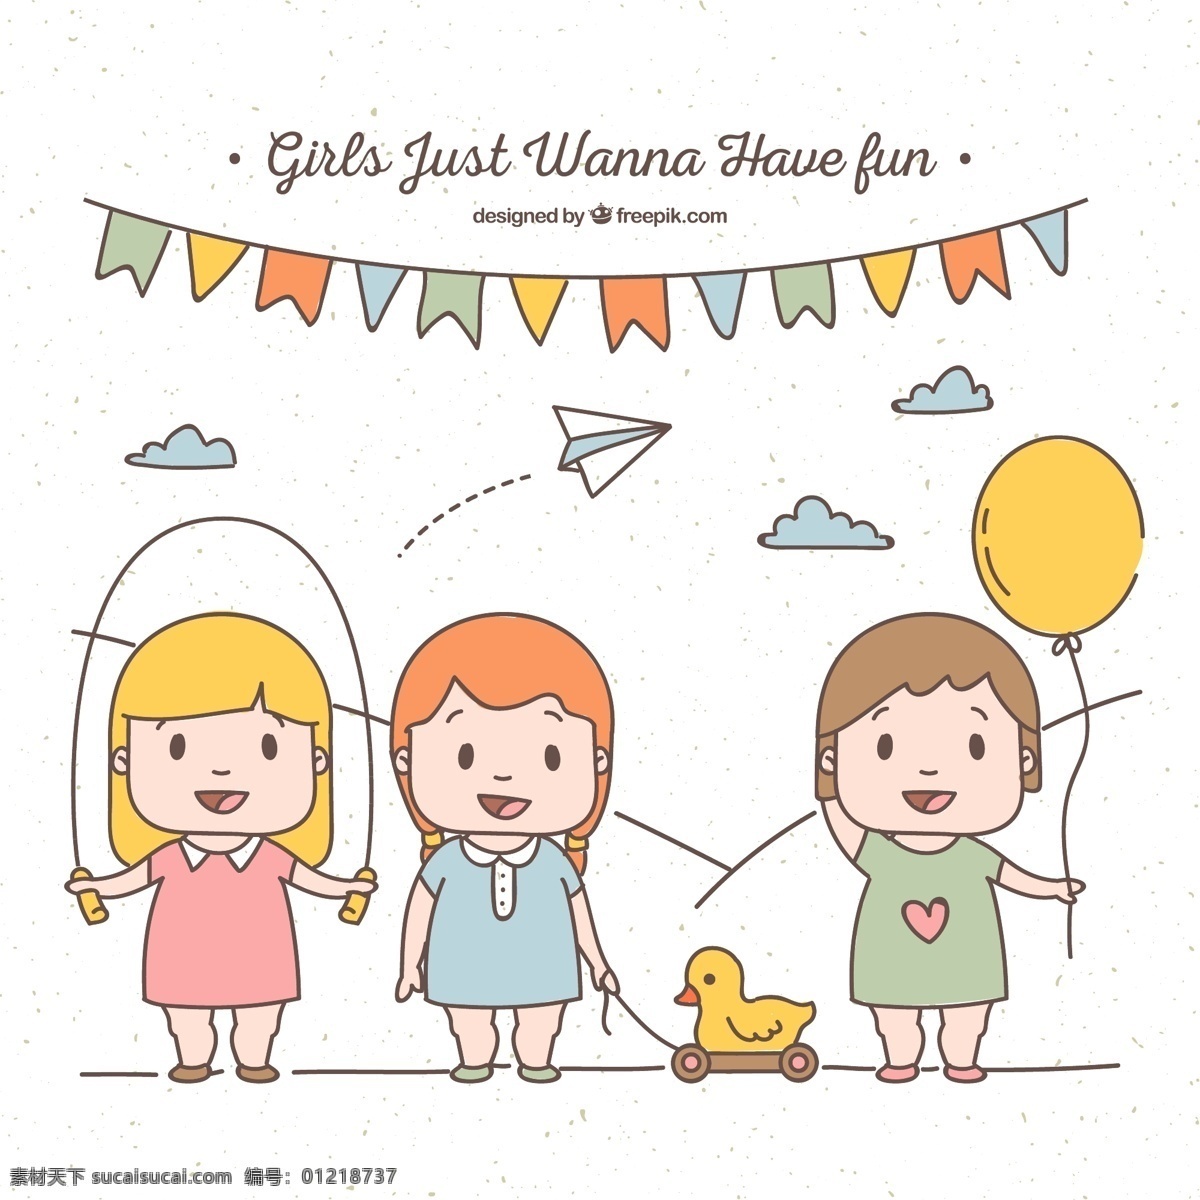 可爱 玩耍 小女孩 3个可爱 气球 彩带 纸飞机 云朵 小鸭 人物 动漫动画 动漫人物